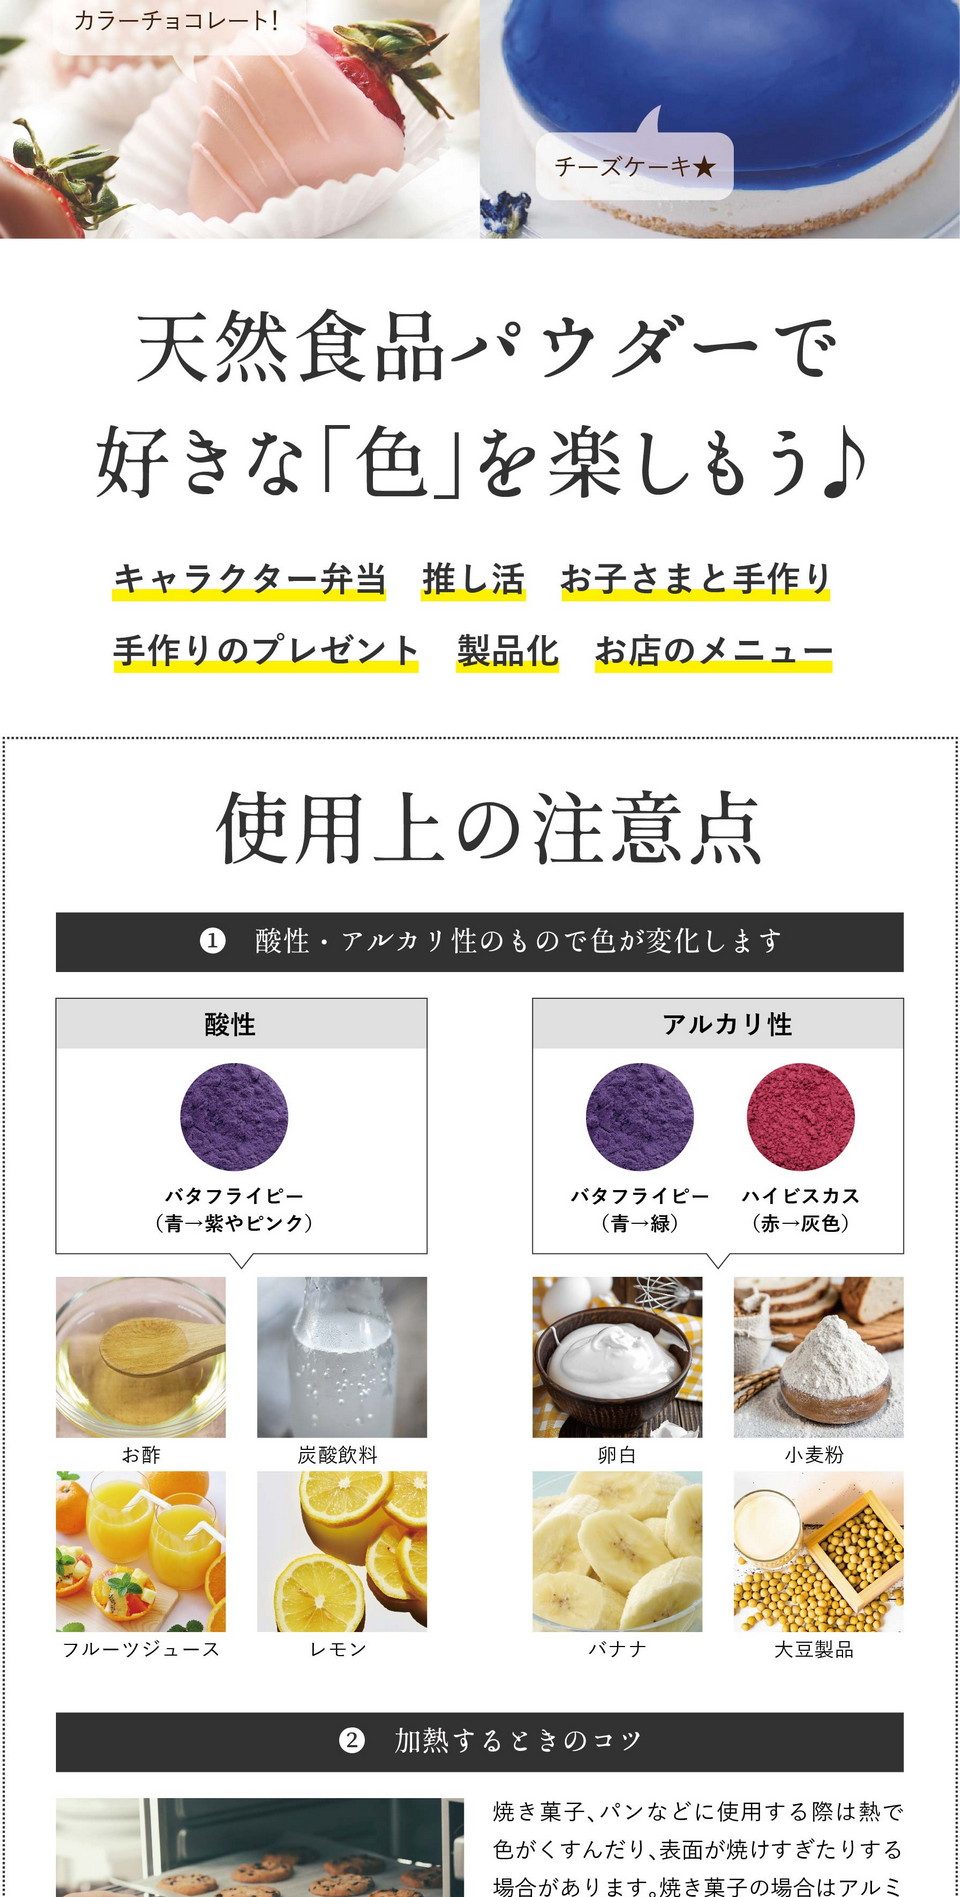 天然食品パウダーで好きな「色」を楽しもう！キャラクター弁当・推し活・お子さまと手作り・手作りのプレゼント・製品化・お店のメニュー。使用上の注意点。①酸性・アルカリ性のもので色が変化します。酸性：バタフライピー（青→紫に変化）お酢、炭酸飲料、フルーツジュース、レモン。アルカリ性：バタフライピー、ハイビスカス（青色→緑に変化）卵白、小麦粉、バナナ、大豆製品。※アルカリ性の変色は酸性のレモン汁などで調整可能。②水と混ぜるときのコツ。ゼリー、ドリンクなど水と混ぜる場合は「お湯」を使うと色がキレイに出ます。少量のお湯または温めた液体で溶いてから冷たい材料を加えるとダマになりにくいです。また、パウダーをお湯に入れる際お茶袋の使用をおすすめしております。